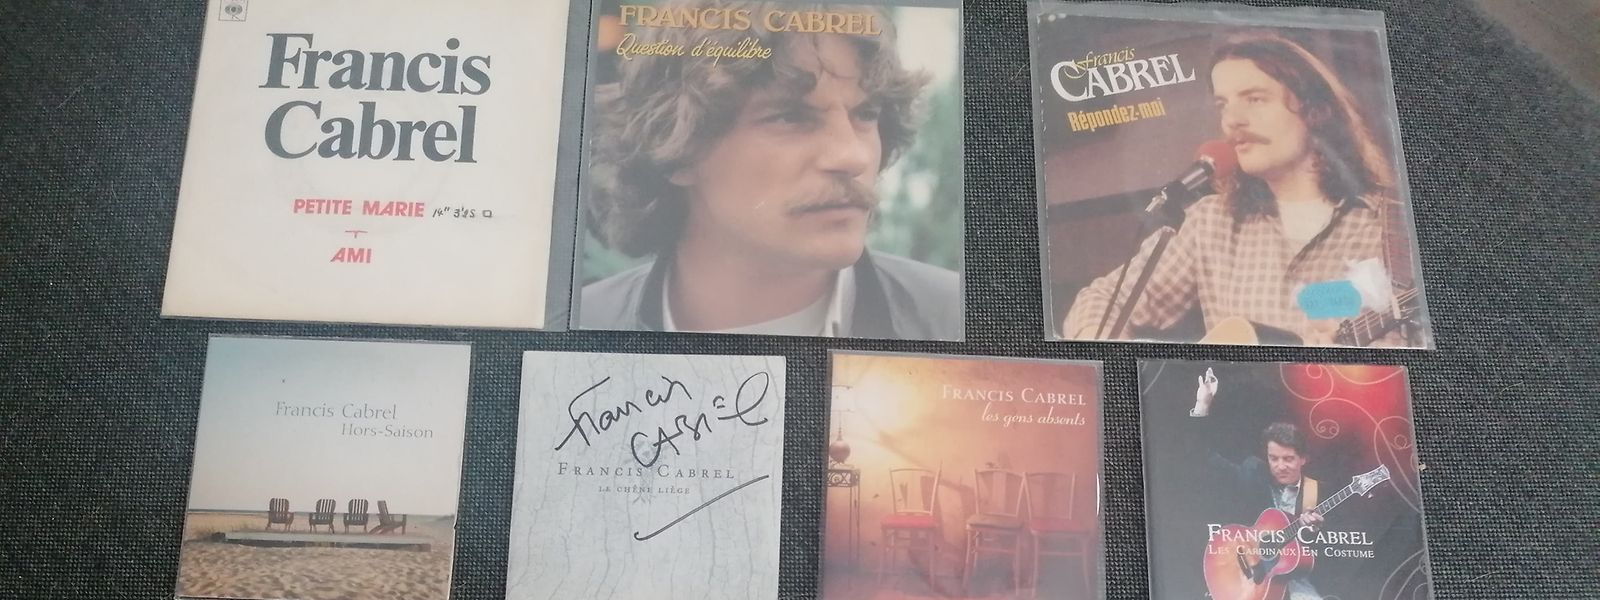 Vinyles, 45 tours, CD: la collection de François est impressionnante 